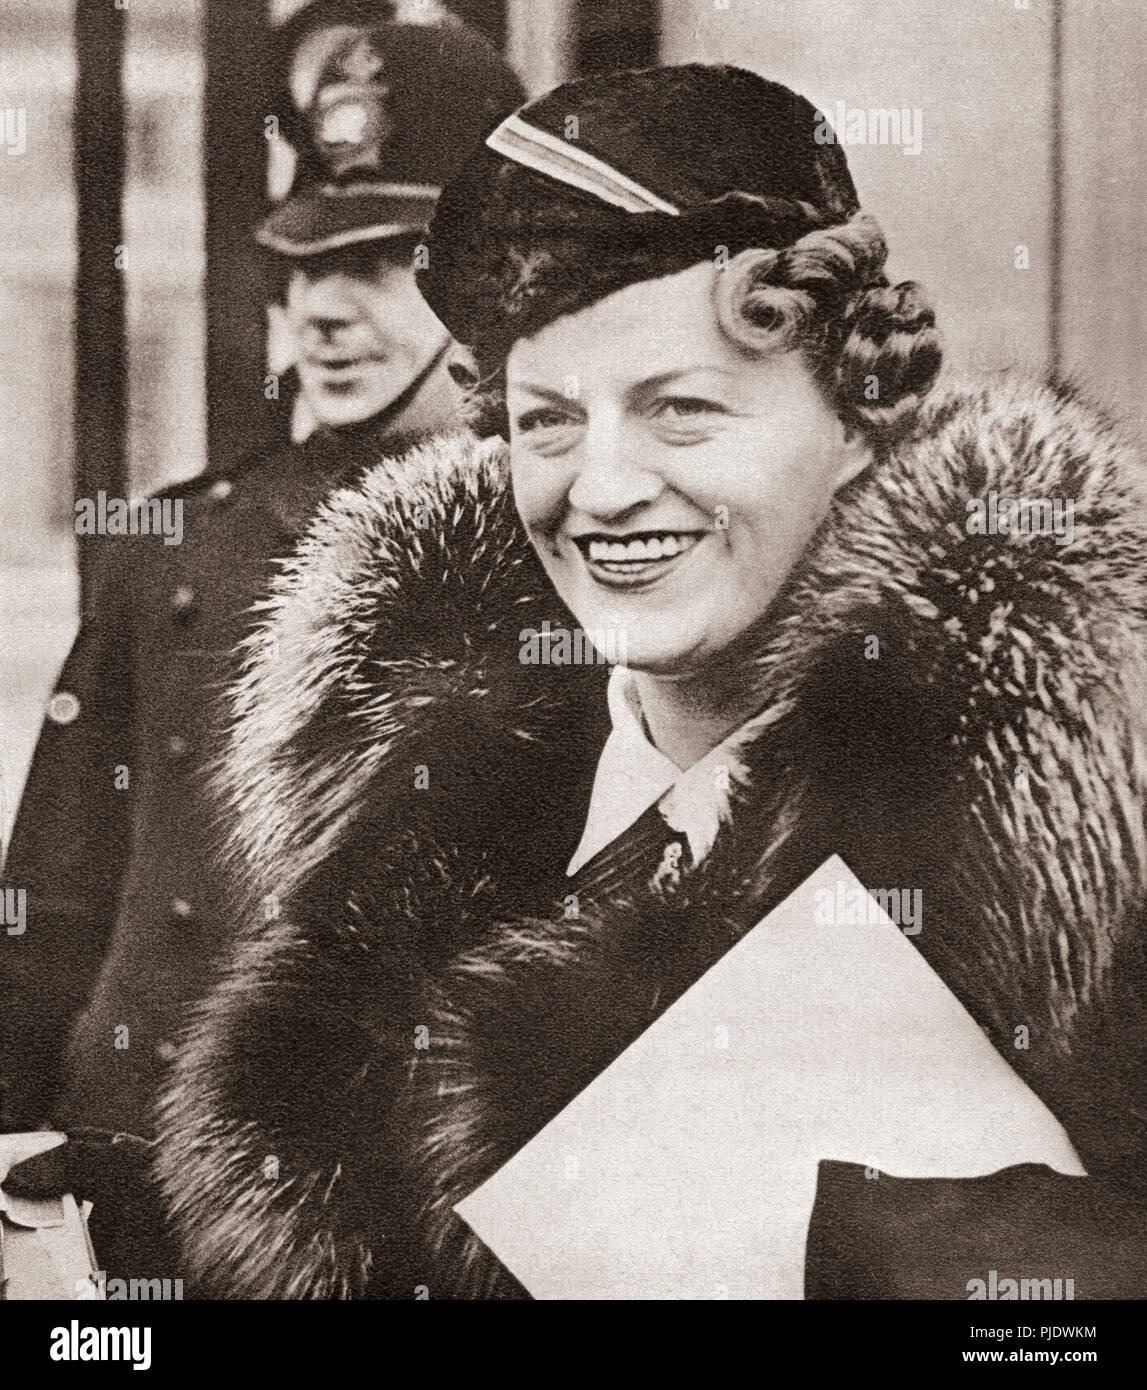 Dame Gracie Fields, geboren Grace Stansfield, 1898 - 1979. Englische Schauspielerin, Sänger, Schauspieler und Star der Kino und Music Hall. Von diesen enormen Jahre, veröffentlicht 1938. Stockfoto